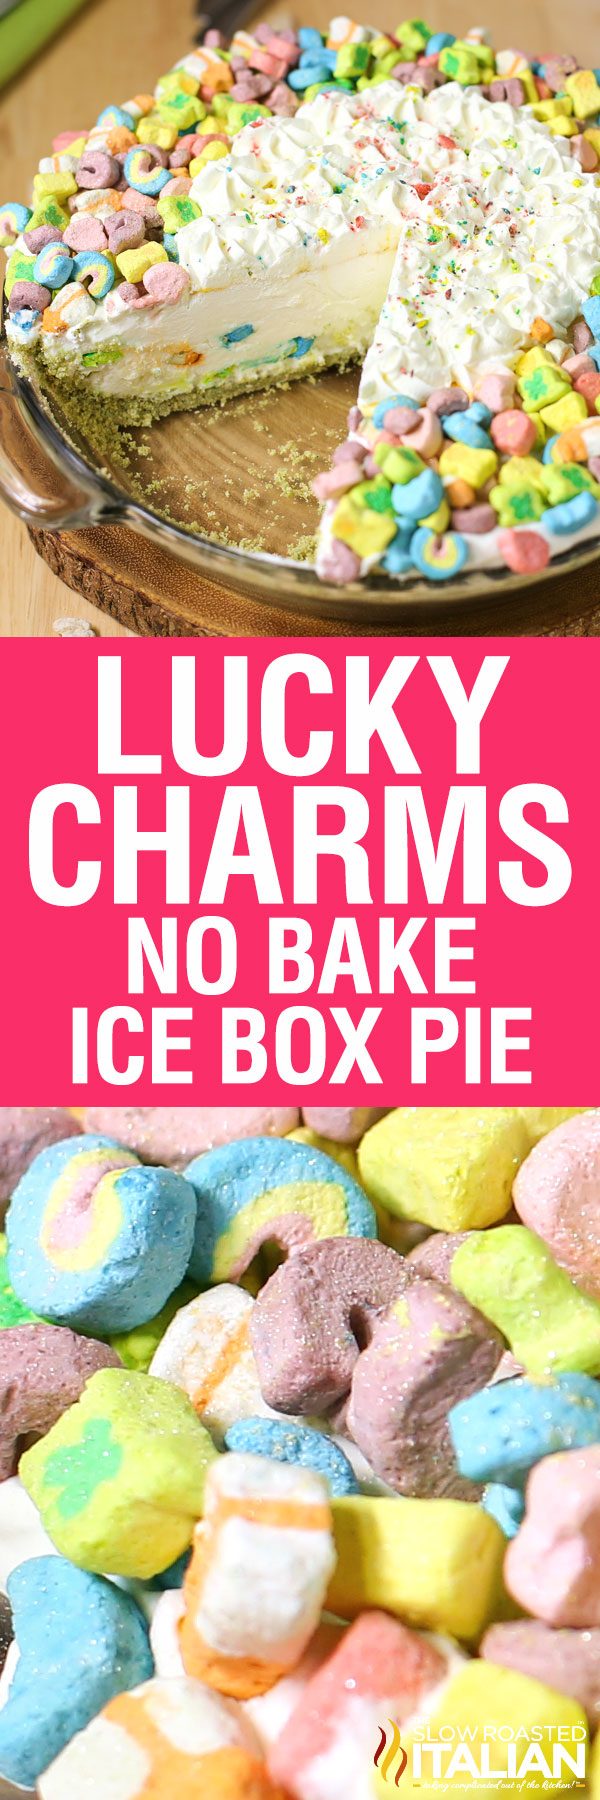 lucky charms no bake ice box -pin